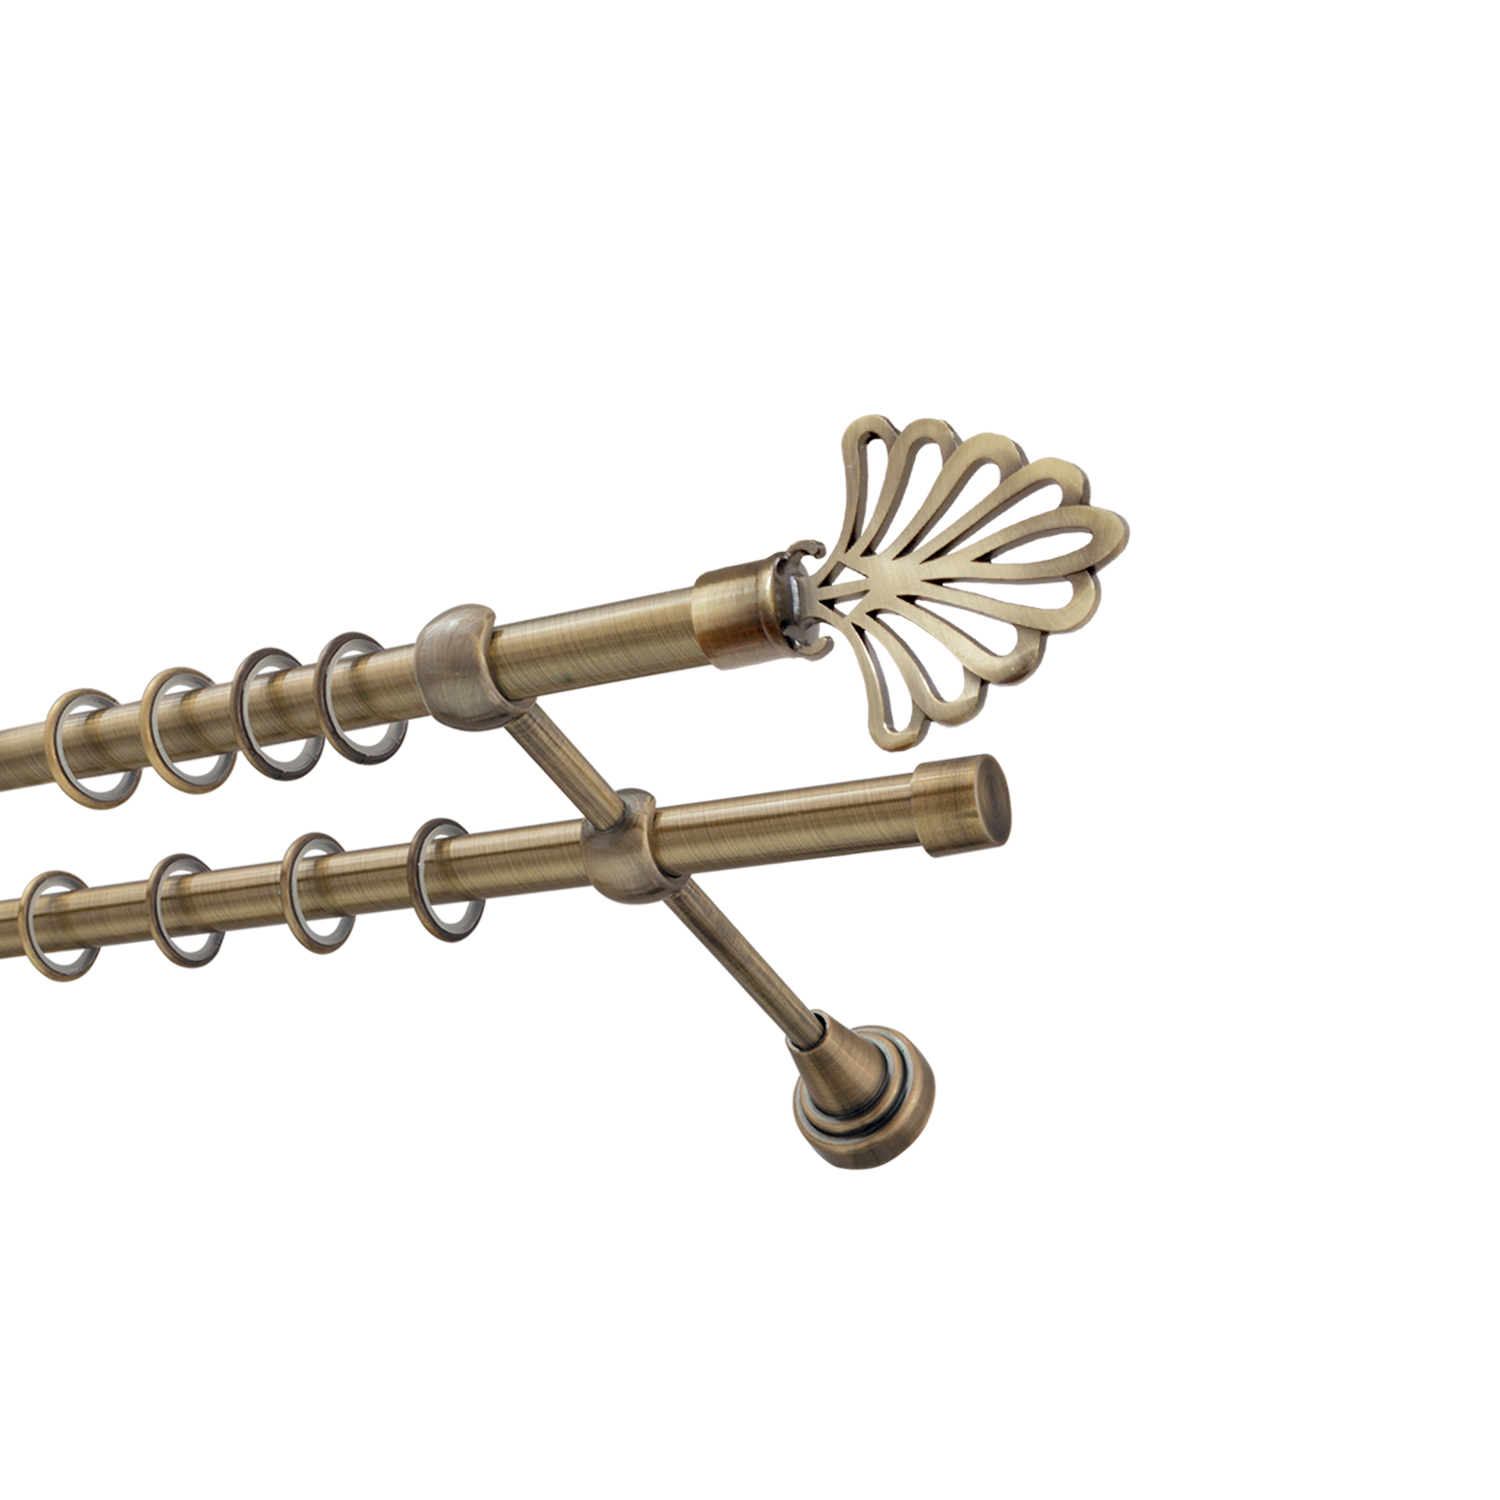 Металлический карниз для штор Бутик, двухрядный 16/16 мм, бронза, гладкая штанга, длина 300 см - фото Wikidecor.ru